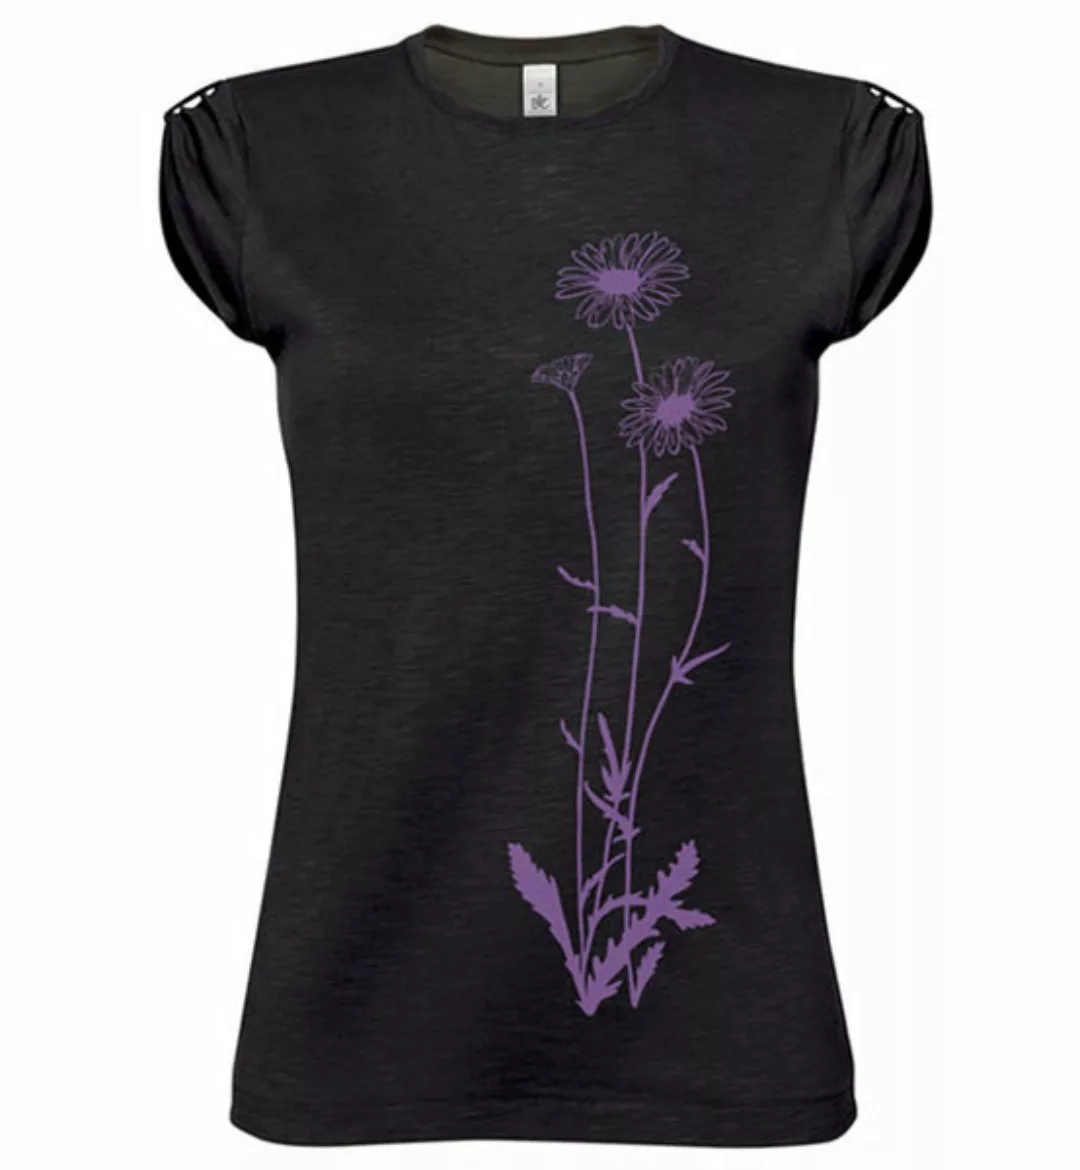 Blumen Top / T-shirt In Schwarz Und Violett / Lila Für Frauen günstig online kaufen